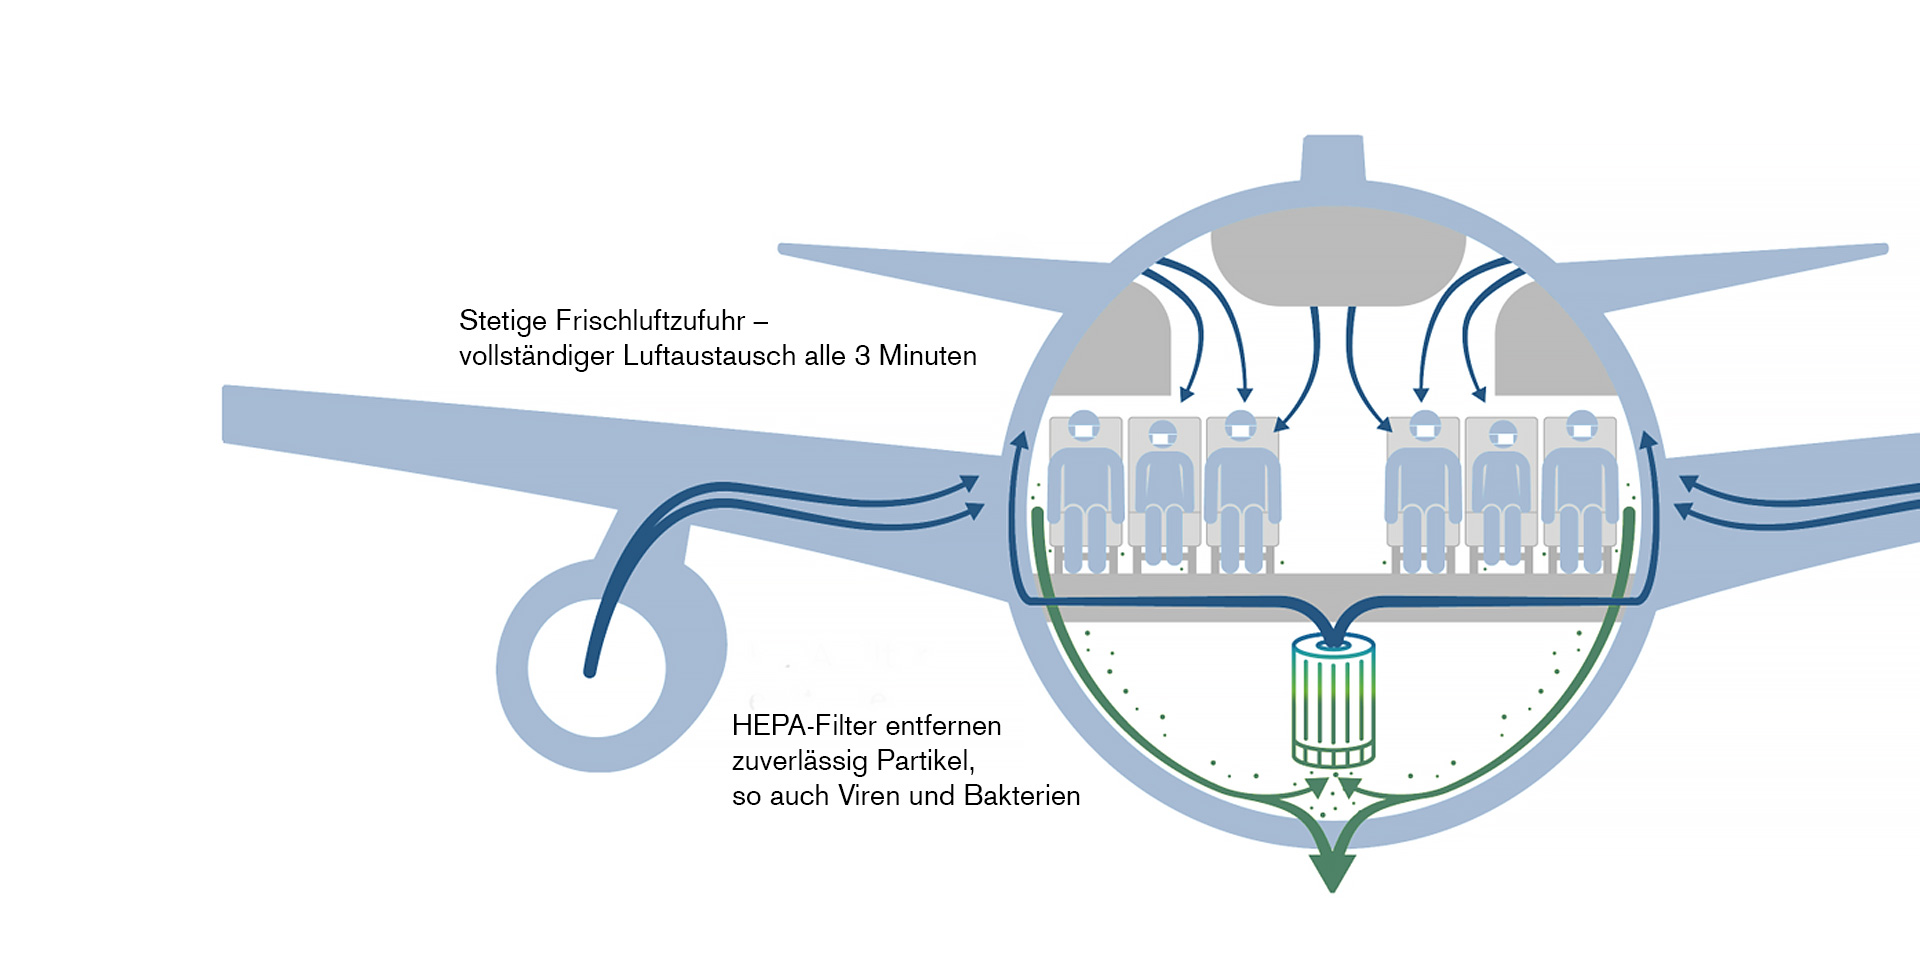 Abbildung 3: Wie die Luft im Flugzeug zirkuliert. Stetige Frischluftzufuhr – vollständiger Luftaustausch alle 3 Minuten. HEPA-Filter entfernen zuverlässig Partikel, so auch Viren und Bakterien.